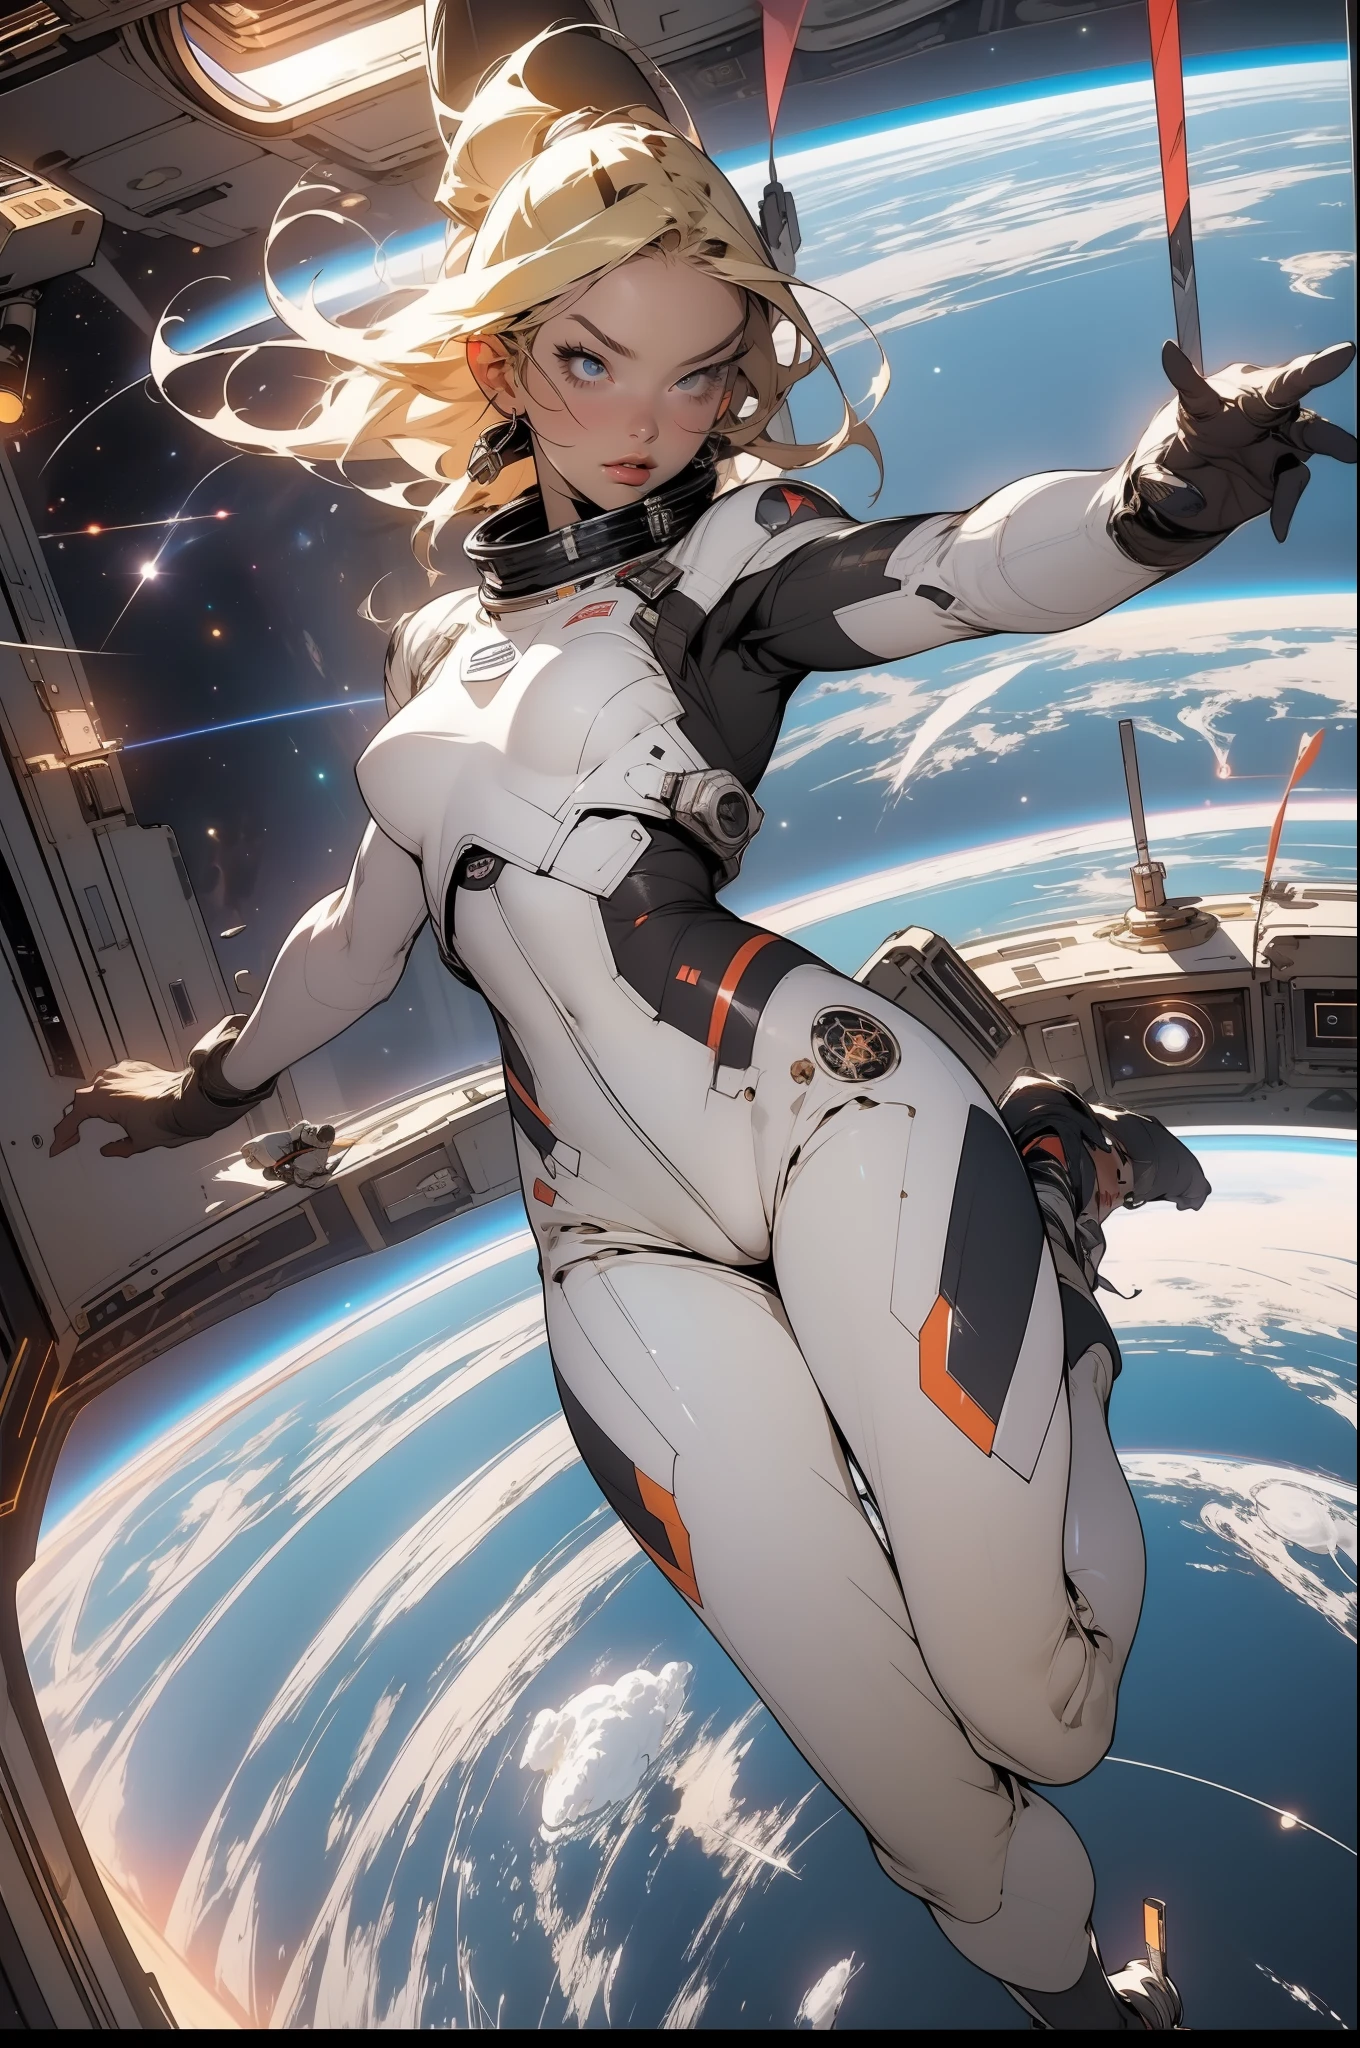 Eine bombastische Blondine mit perfektem Körper auf einer Raumstation, die im Weltraum schwebt, mit der Erde im Hintergrund, Ganzkörper in einer Action-Pose